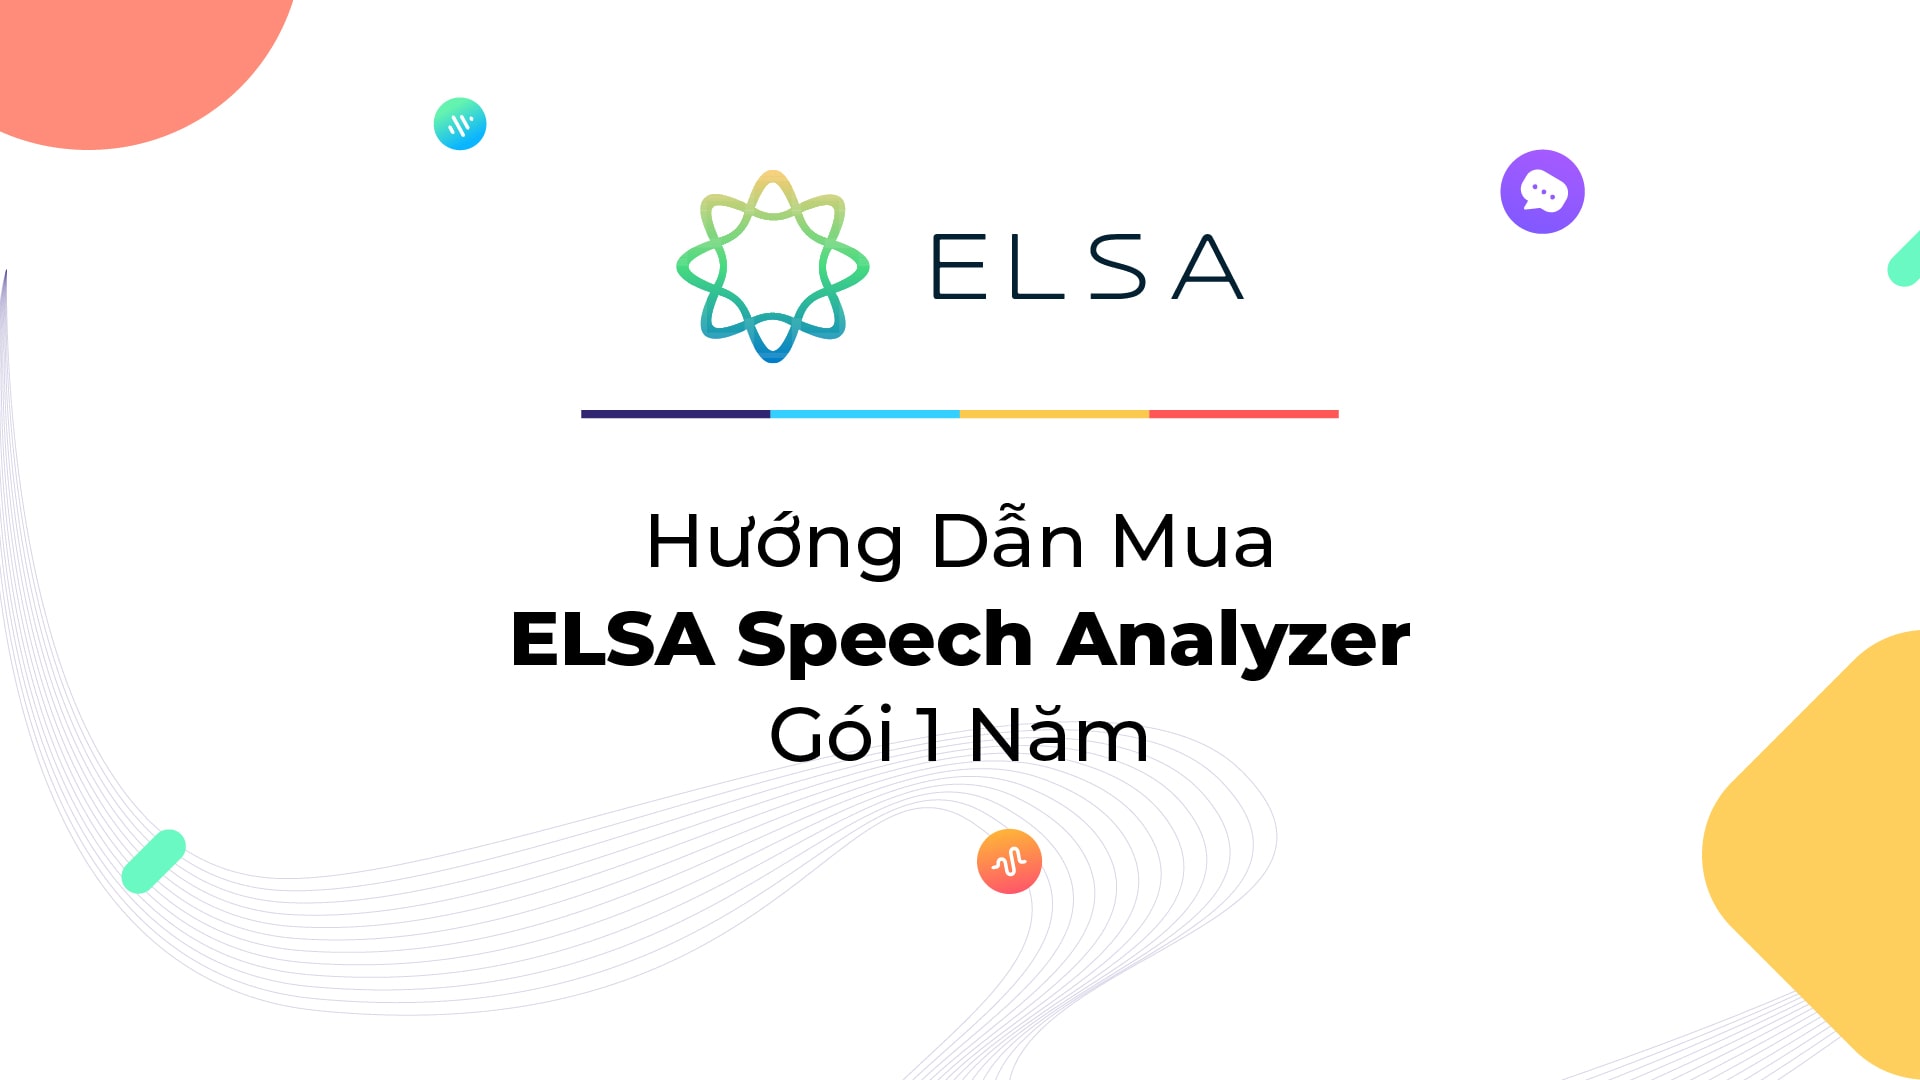 Hướng Dẫn Cách Mua ELSA Speech Analyzer Gói 1 Năm Giá Rẻ